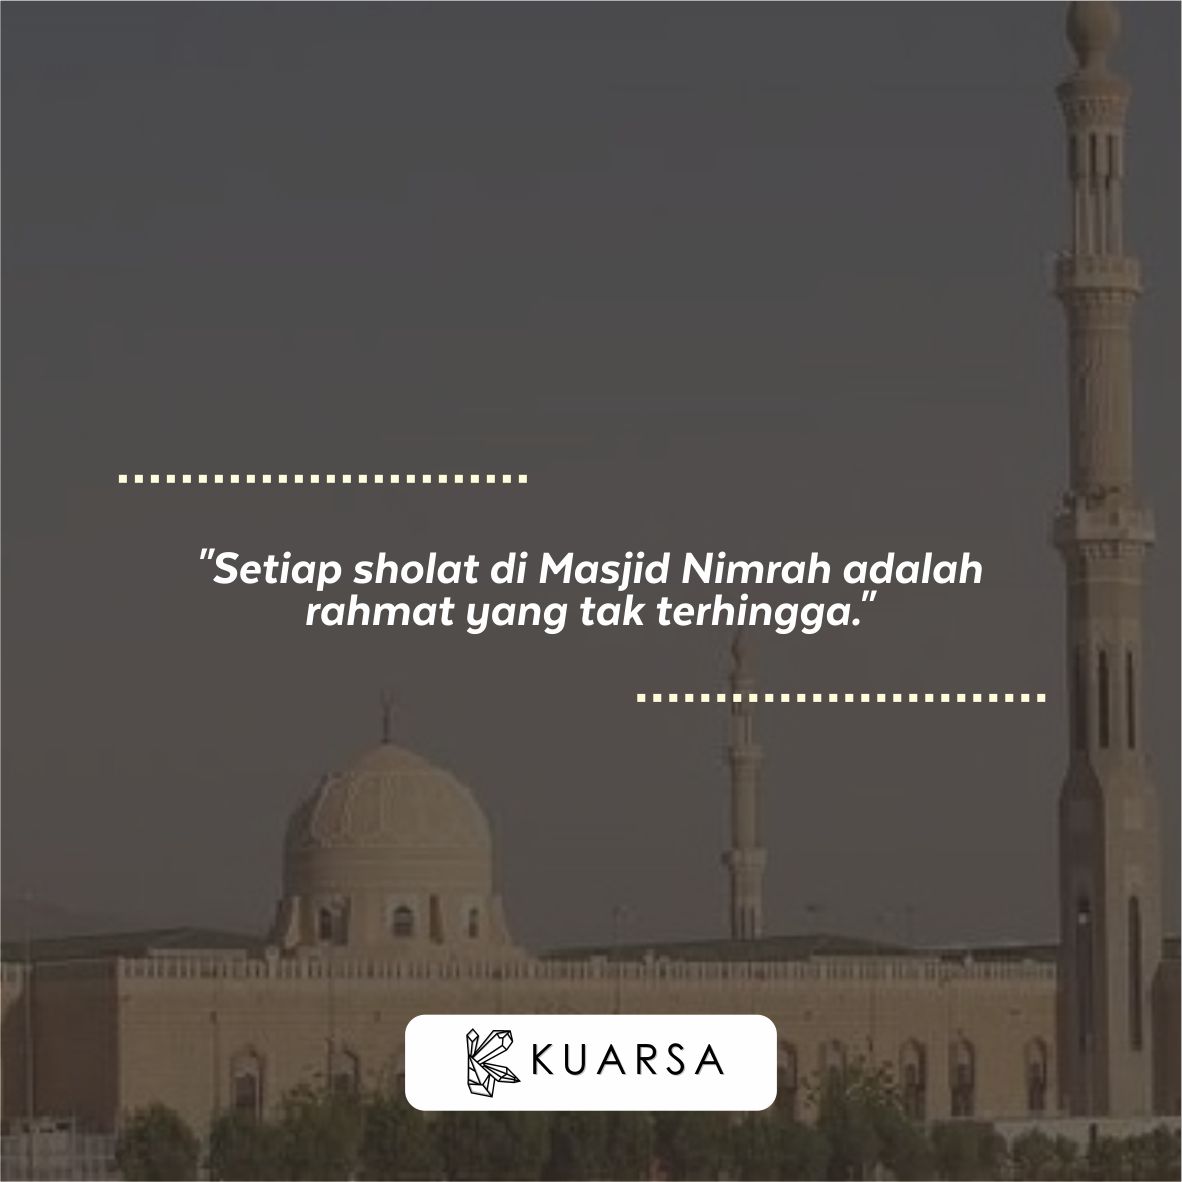 20 Kata-Kata Berkunjung ke Masjid Nimrah, Quotes Bersyukur Bisa Sholat di Masjid Nimrah